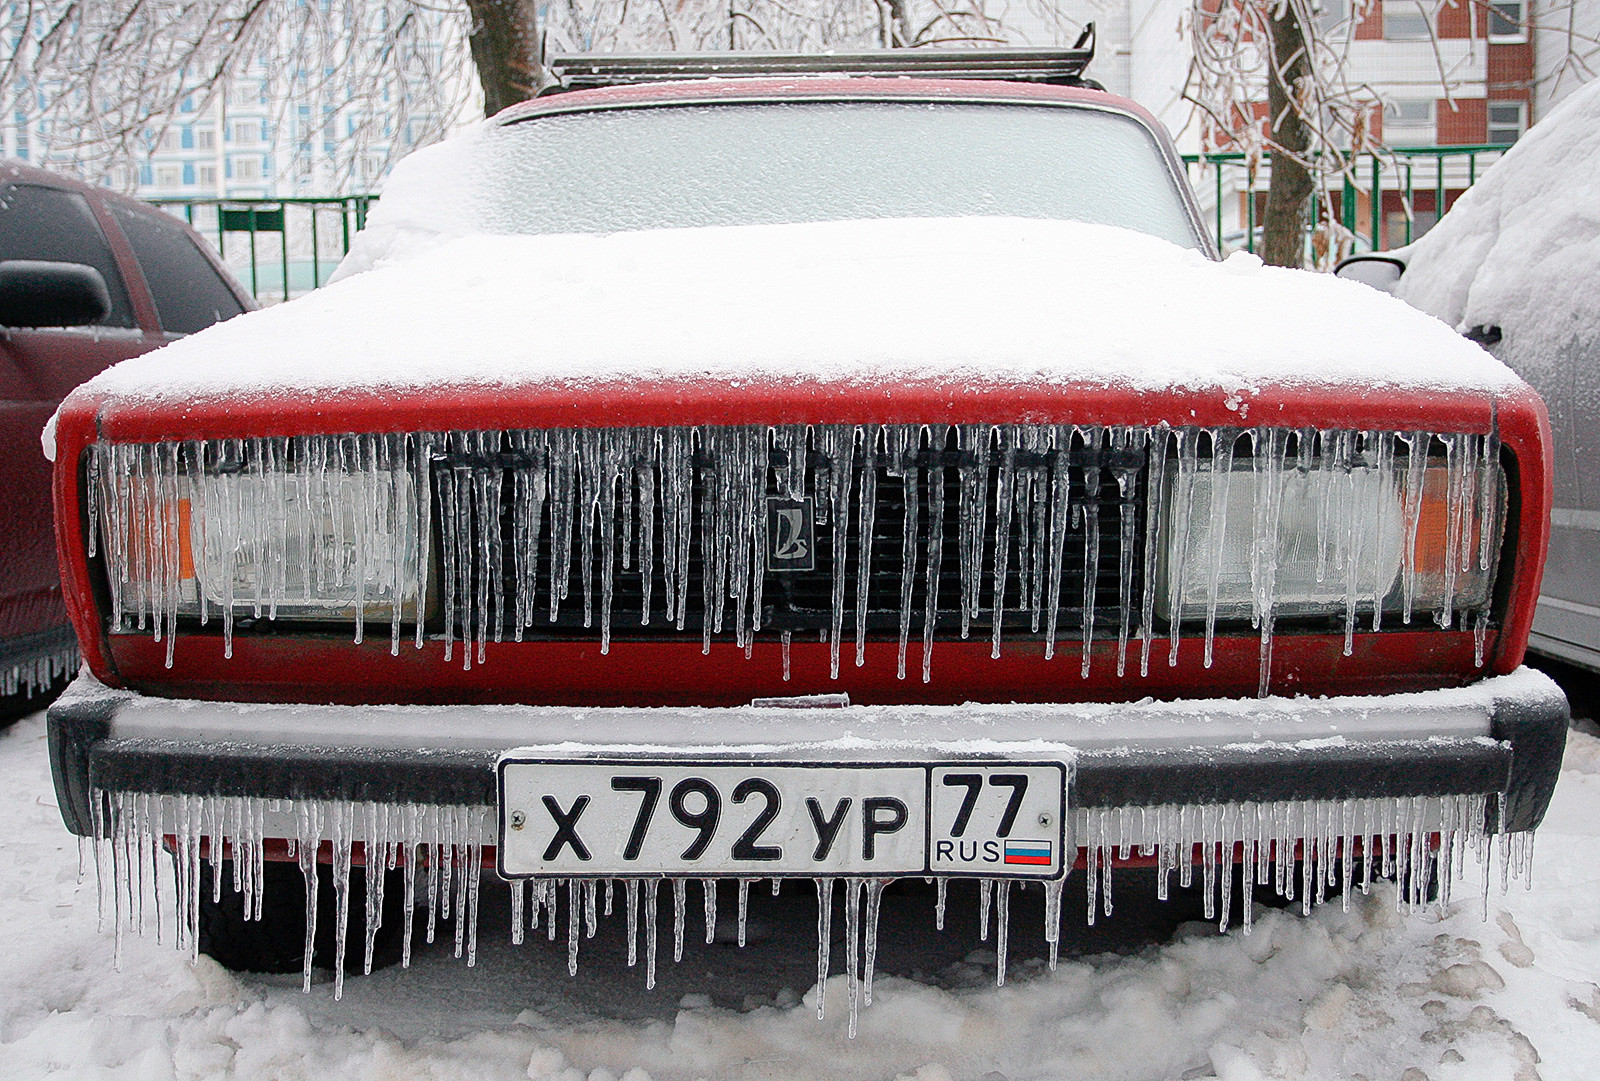 Последствията от ледения дъжд в Москва, 2010
